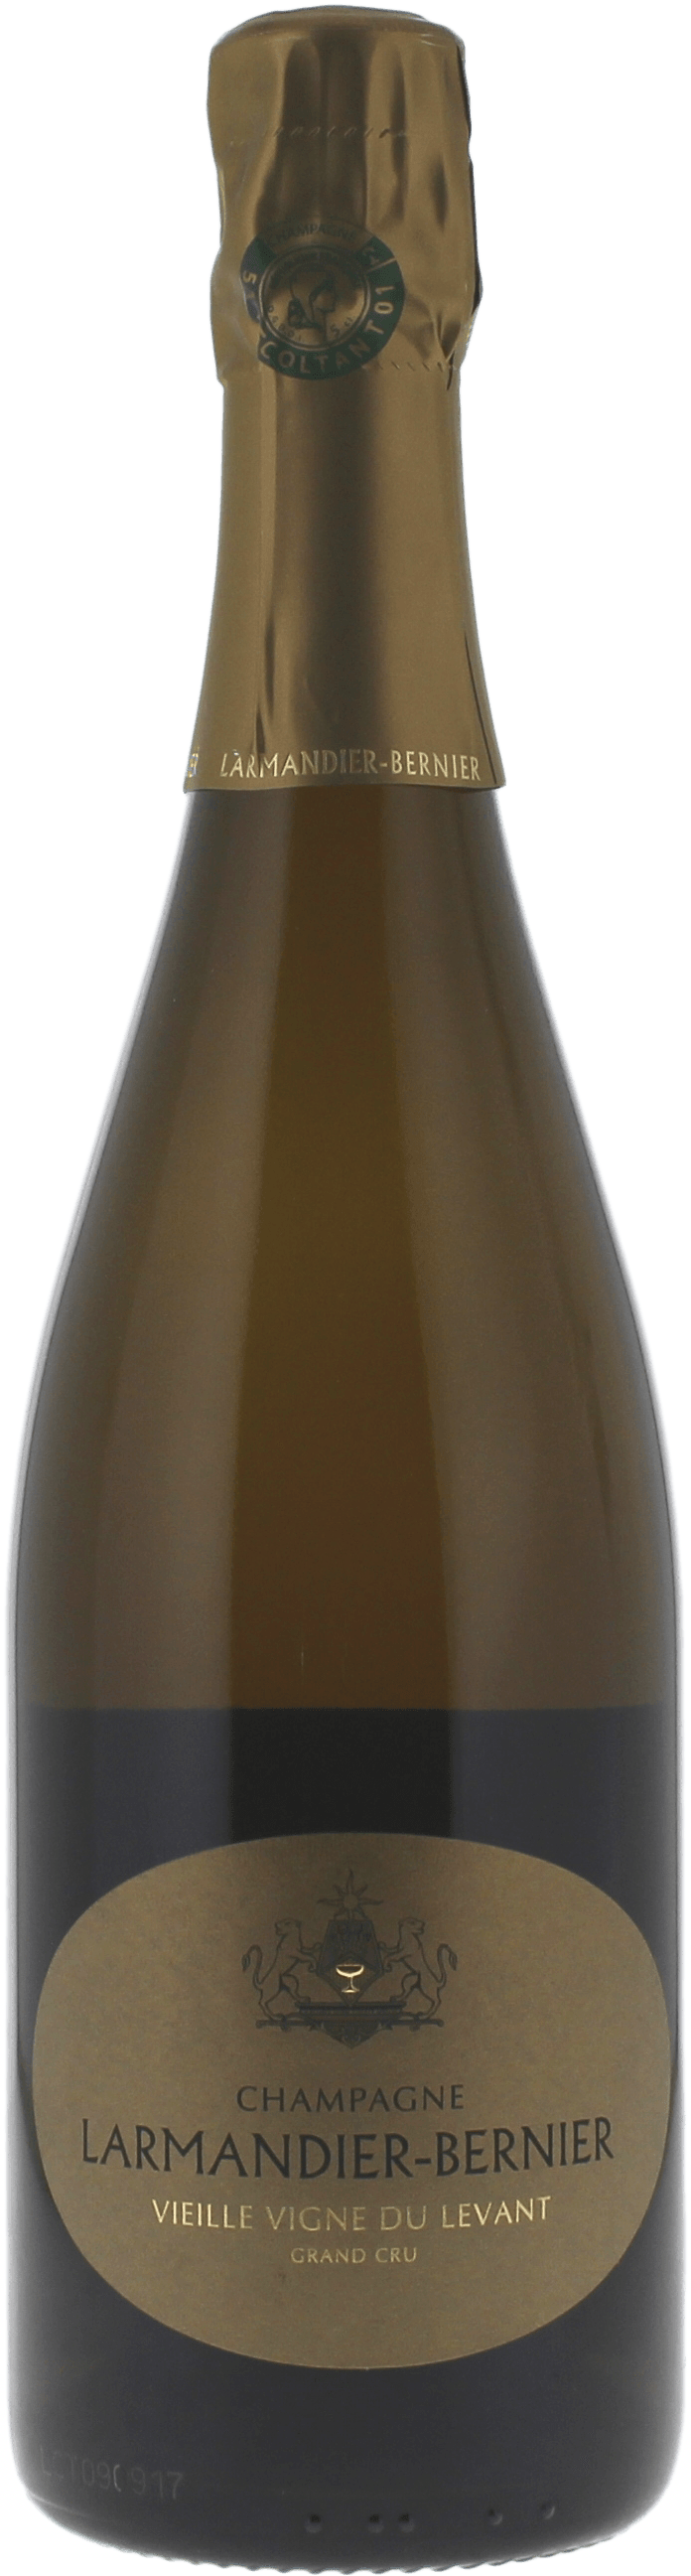 Larmandier-bernier vieille vigne du levant grand cru  2014  LARMANDIER BERNIER, Champagne